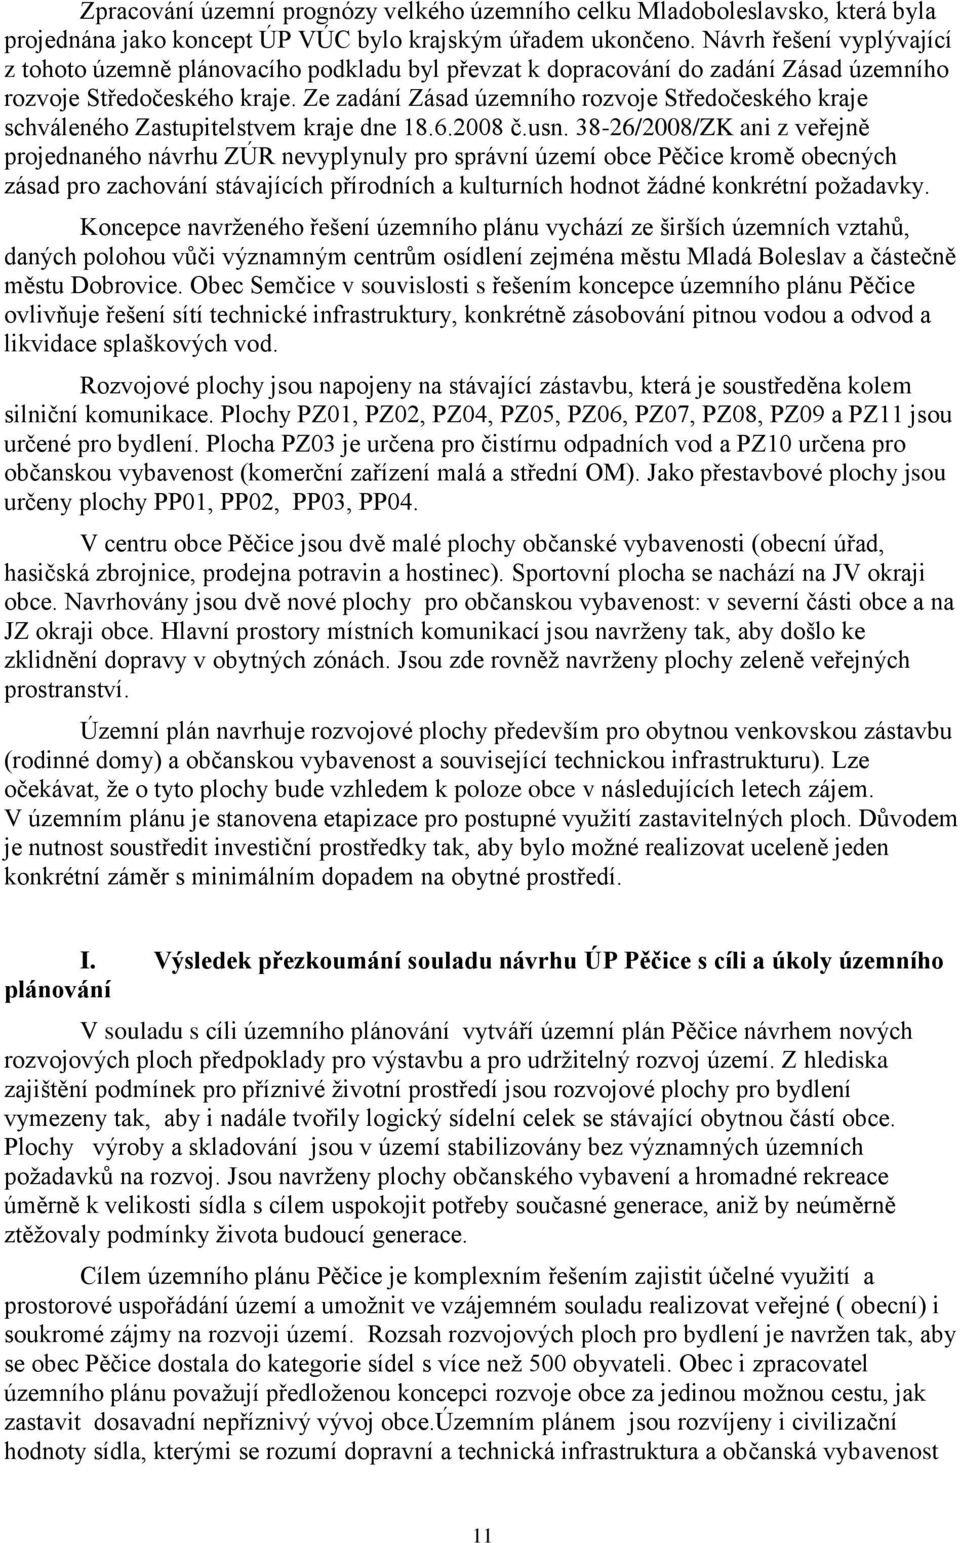 Ze zadání Zásad územního rozvoje Středočeského kraje schváleného Zastupitelstvem kraje dne 18.6.2008 č.usn.